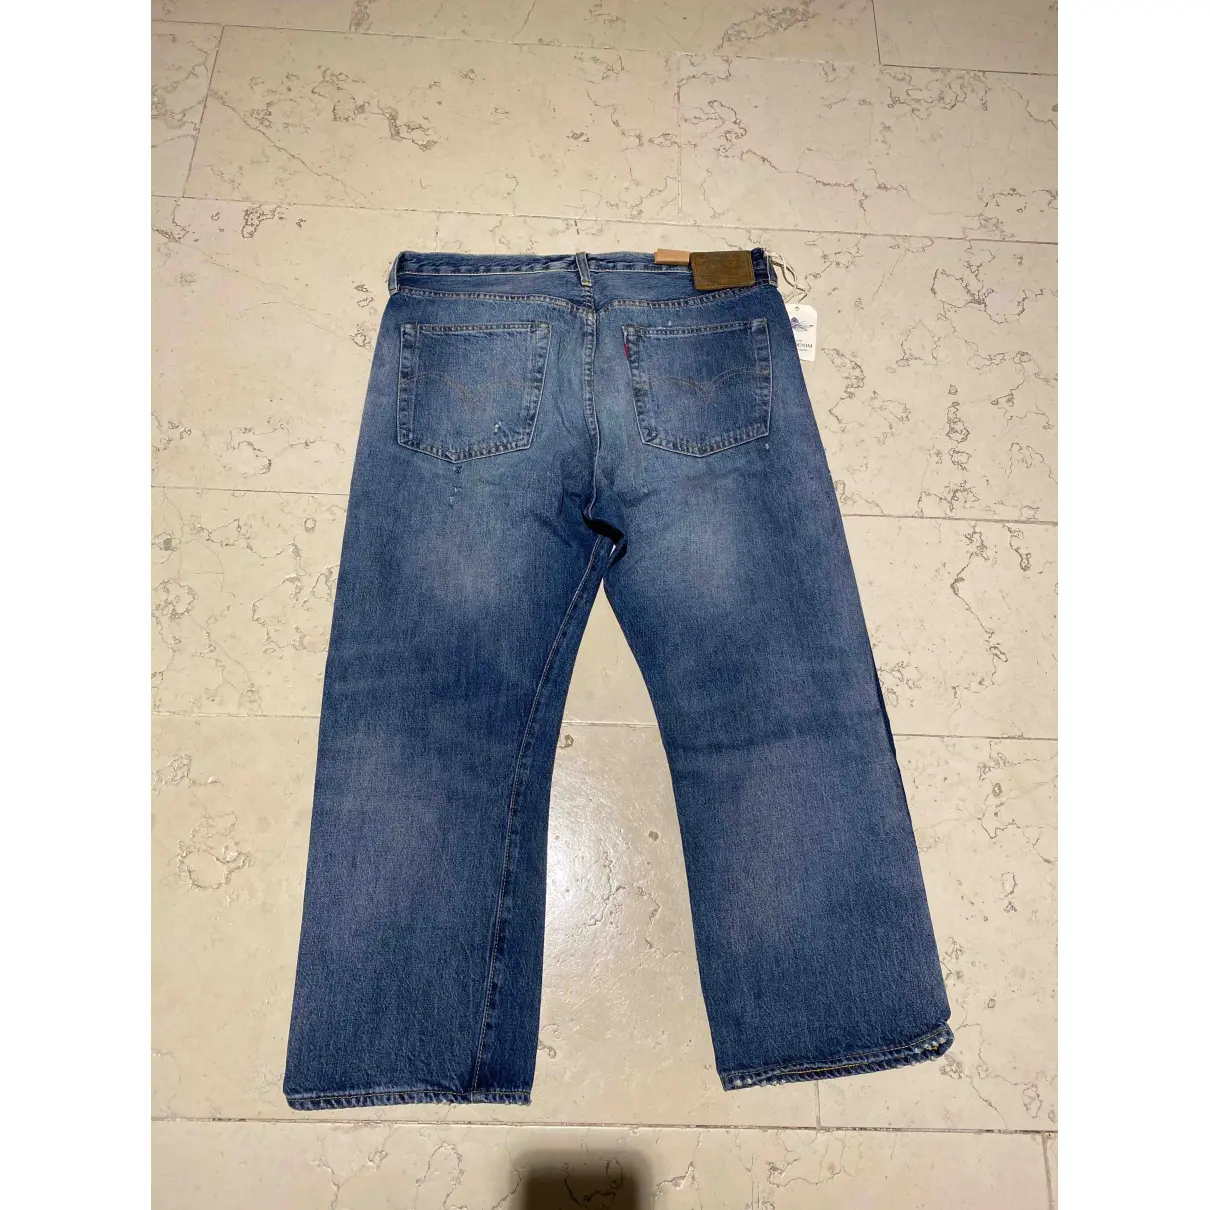 Buy Levi's Vintage Clothing Cotton Jeans online